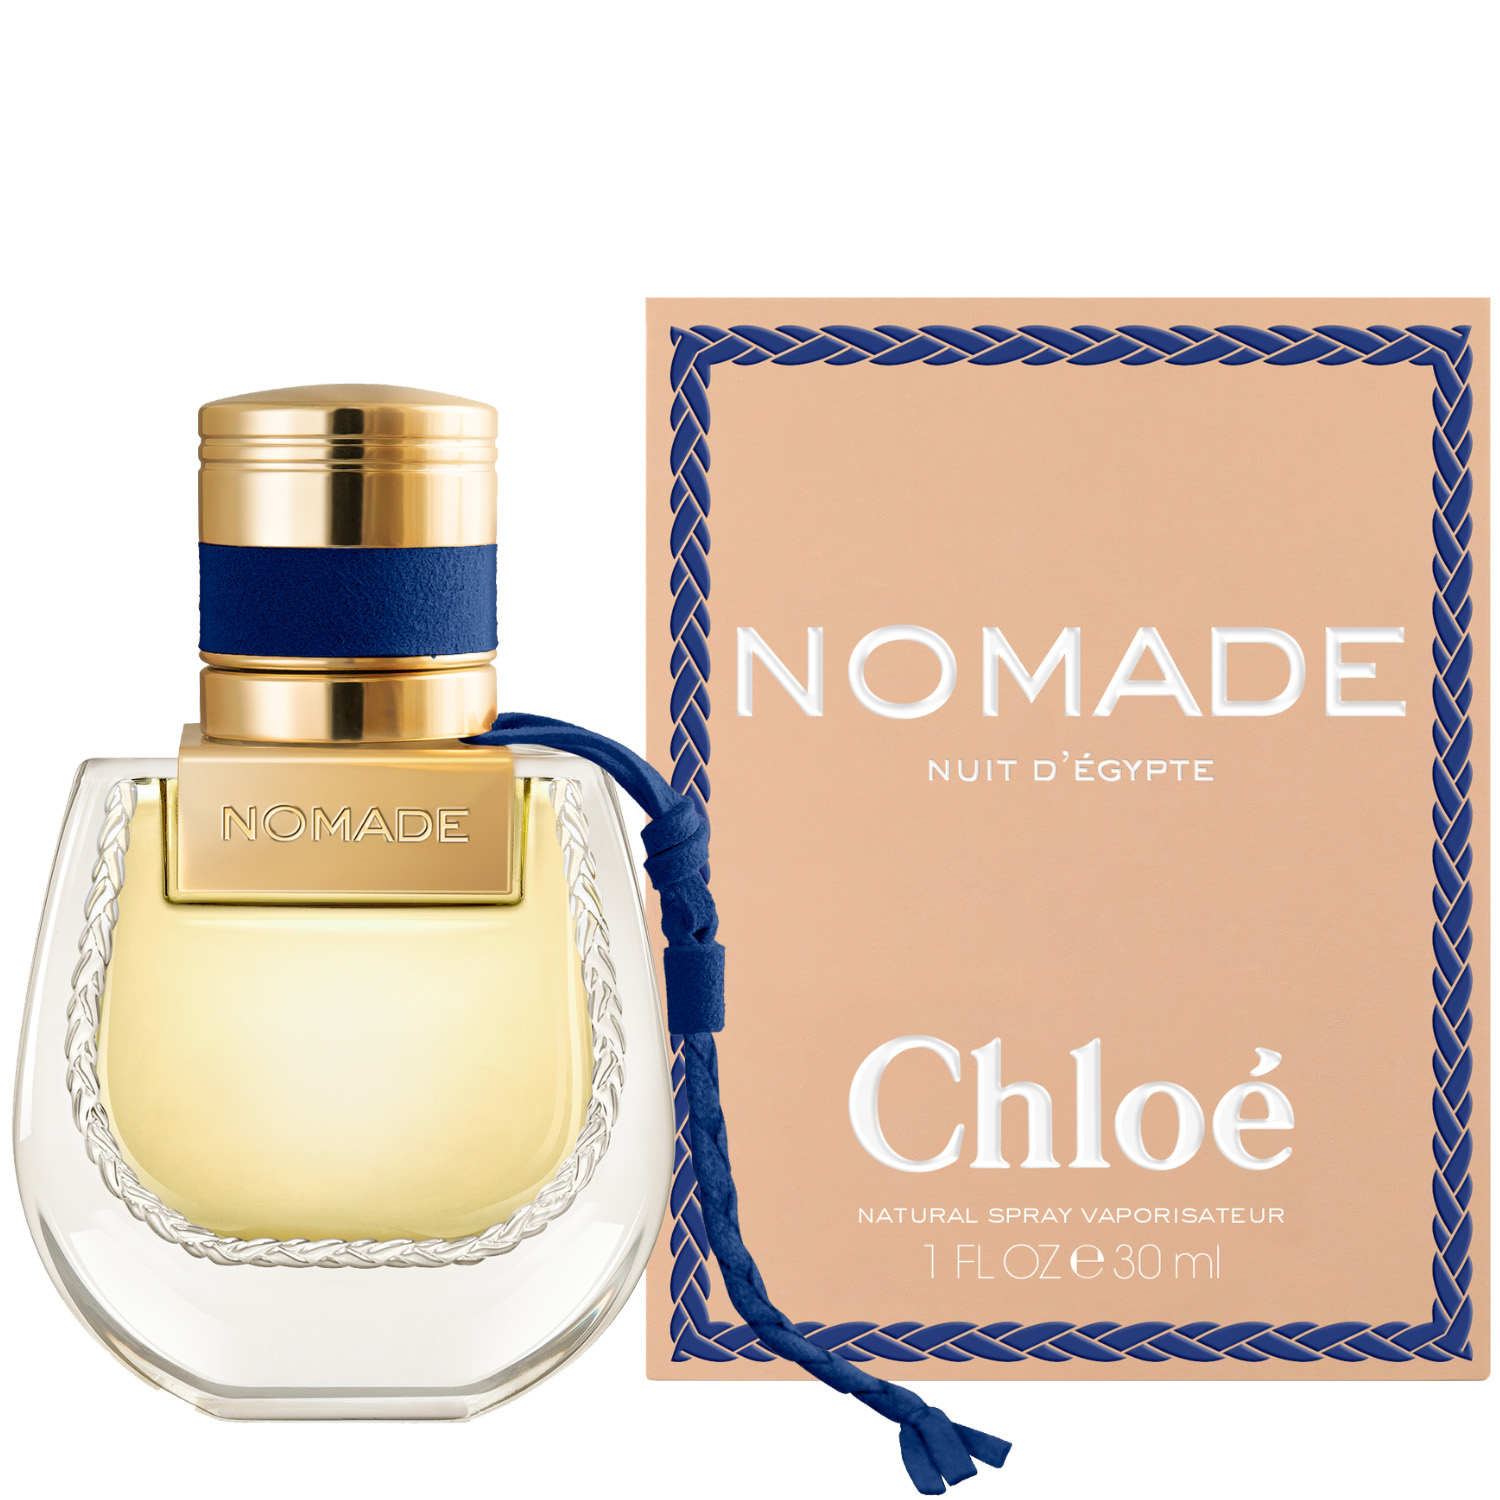 Chloé Nomade Nuit d’Egypte Eau de Parfum 30ml